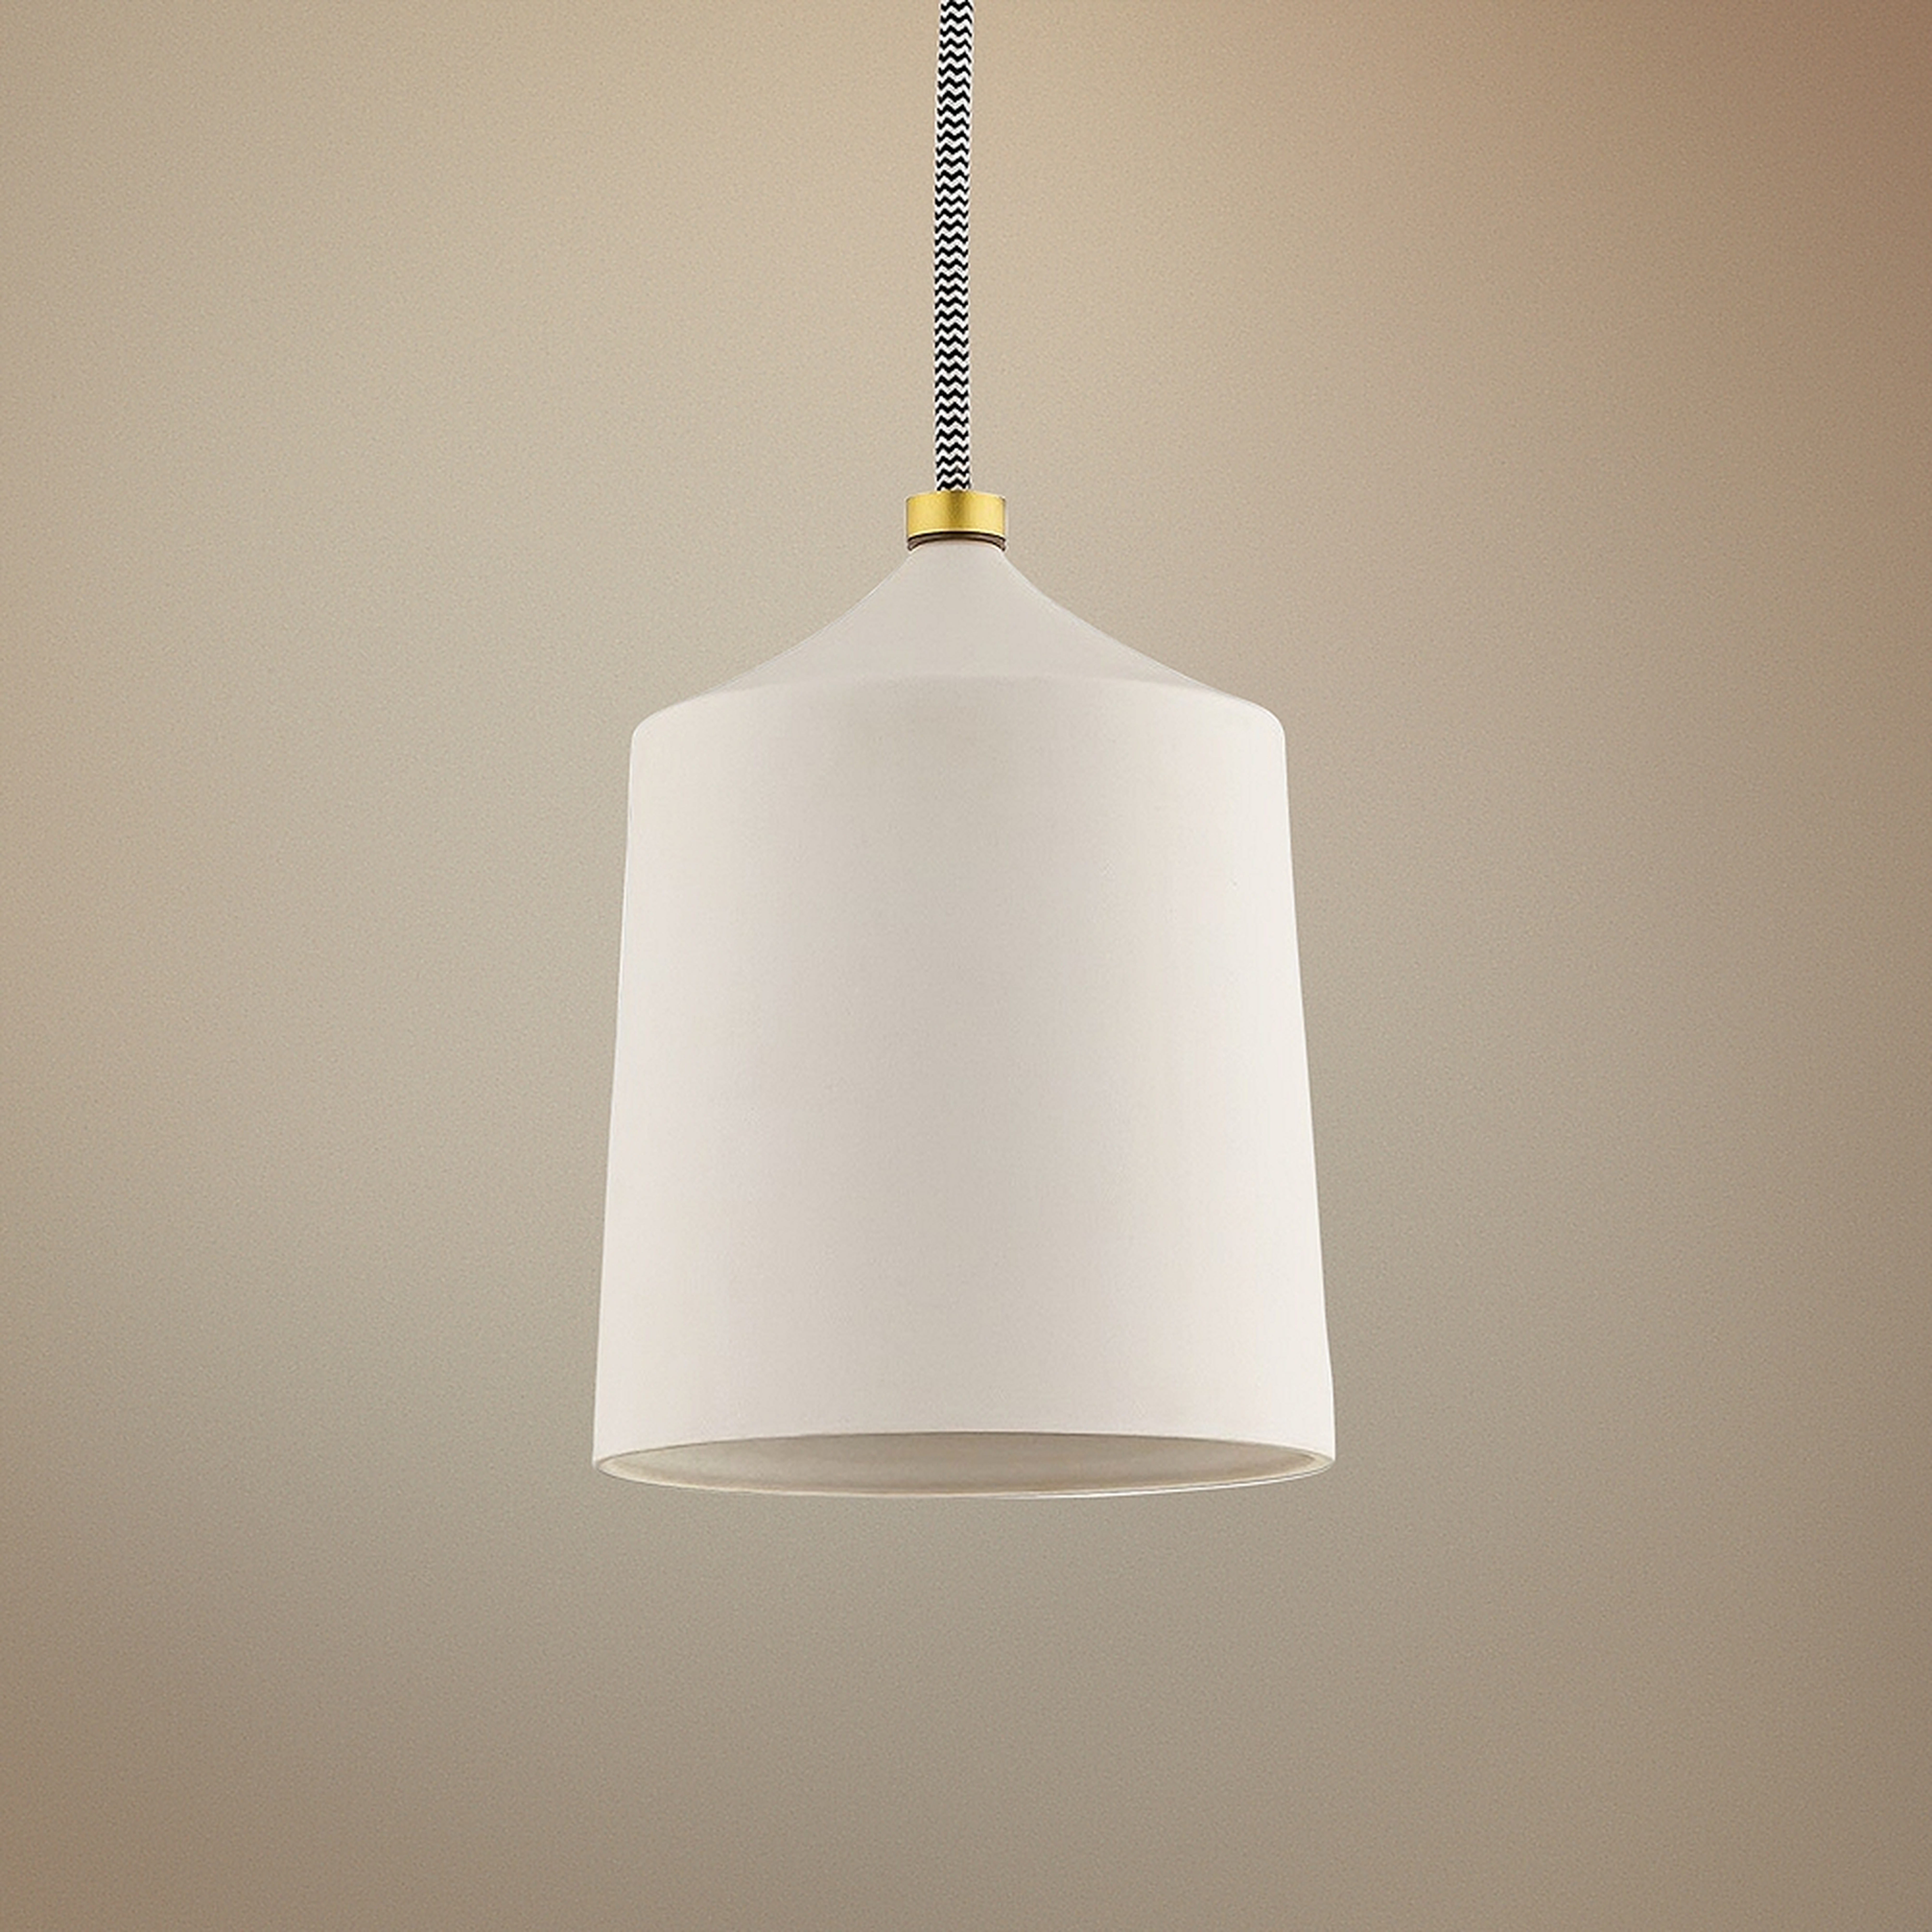 Mitzi Megan 5 3/4" Wide White Ceramic Mini Pendant Light - Style # 76K75 - Lamps Plus